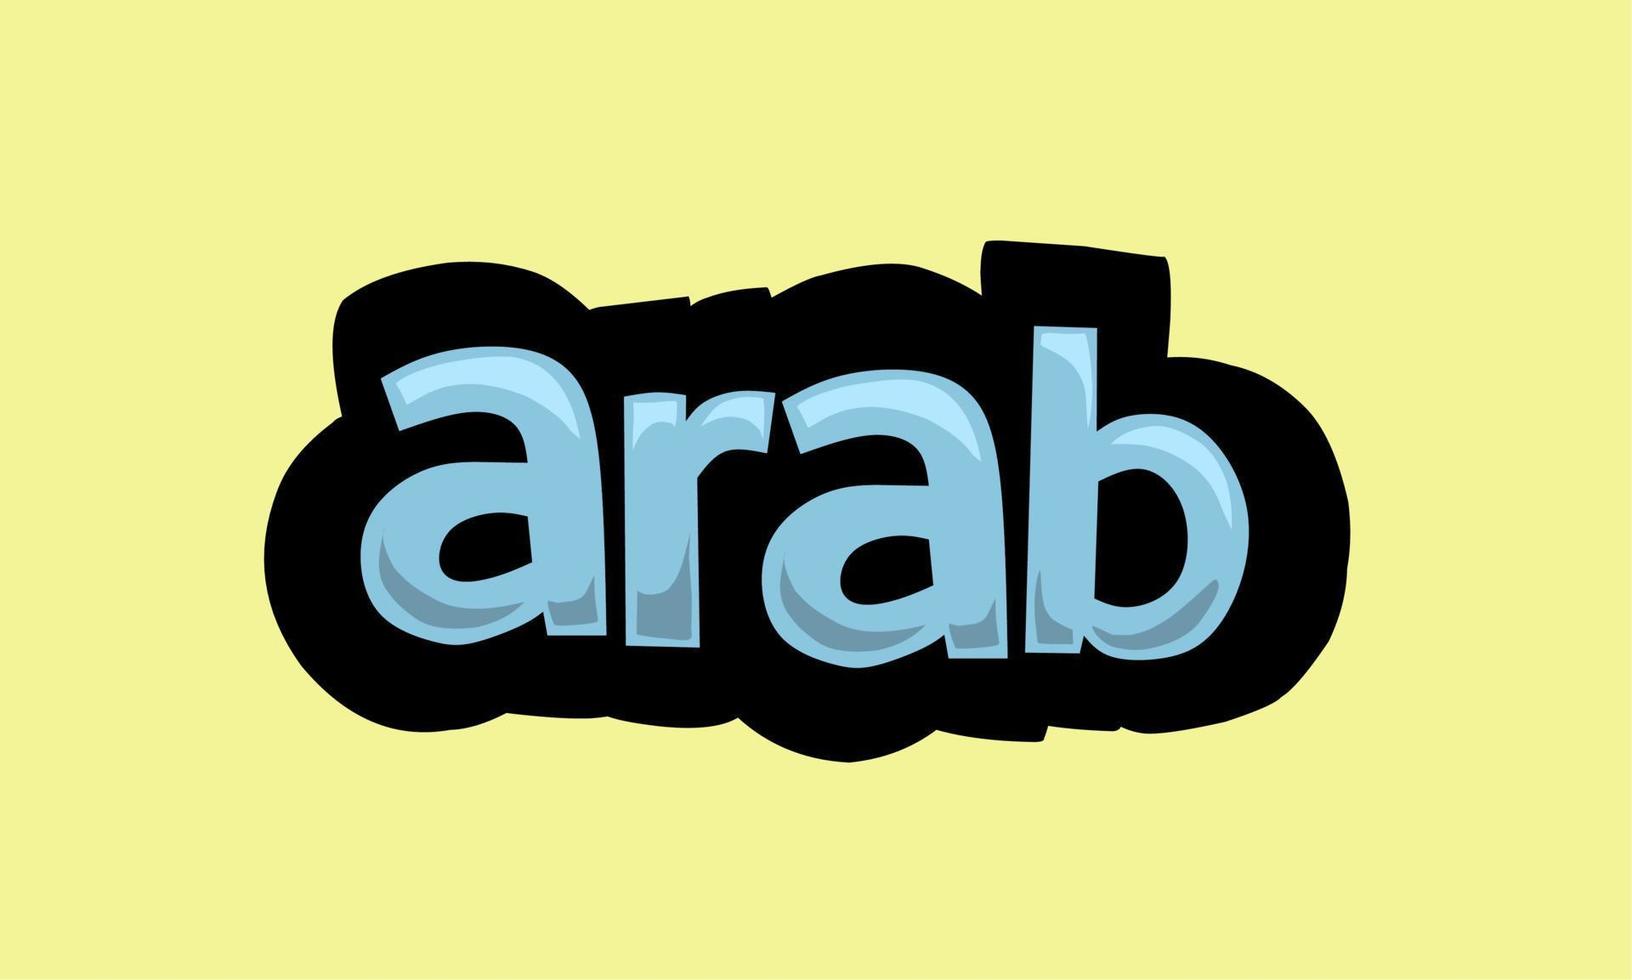 conception de vecteur d'écriture arabe sur fond jaune